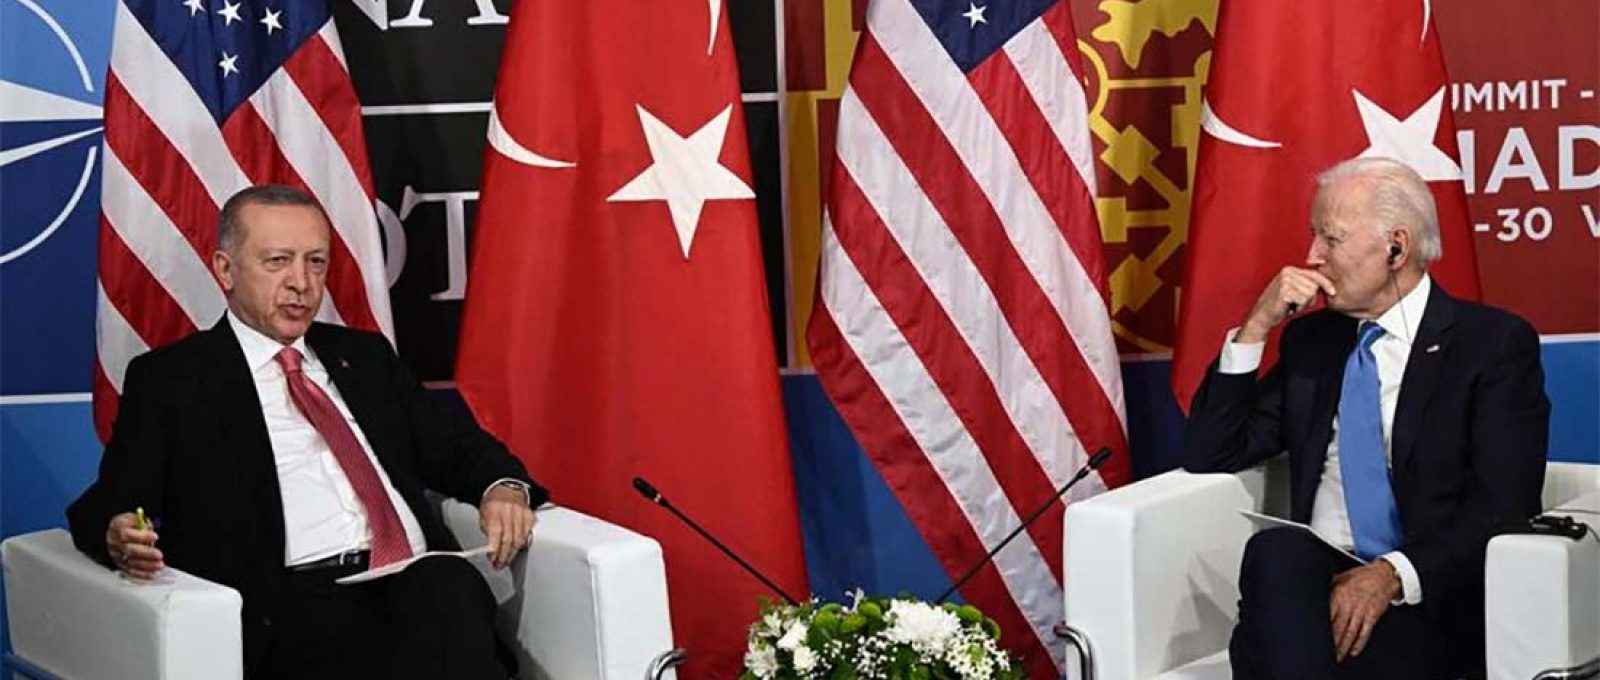 Os presidentes dos EUA, Joe Biden, e da Turquia, Recep Tayyip Erdogan, durante reunião bilateral à margem da cúpula da OTAN em Madri, em 29 de junho de 2022 (Brendan Smialowski/AFP via Getty Images).